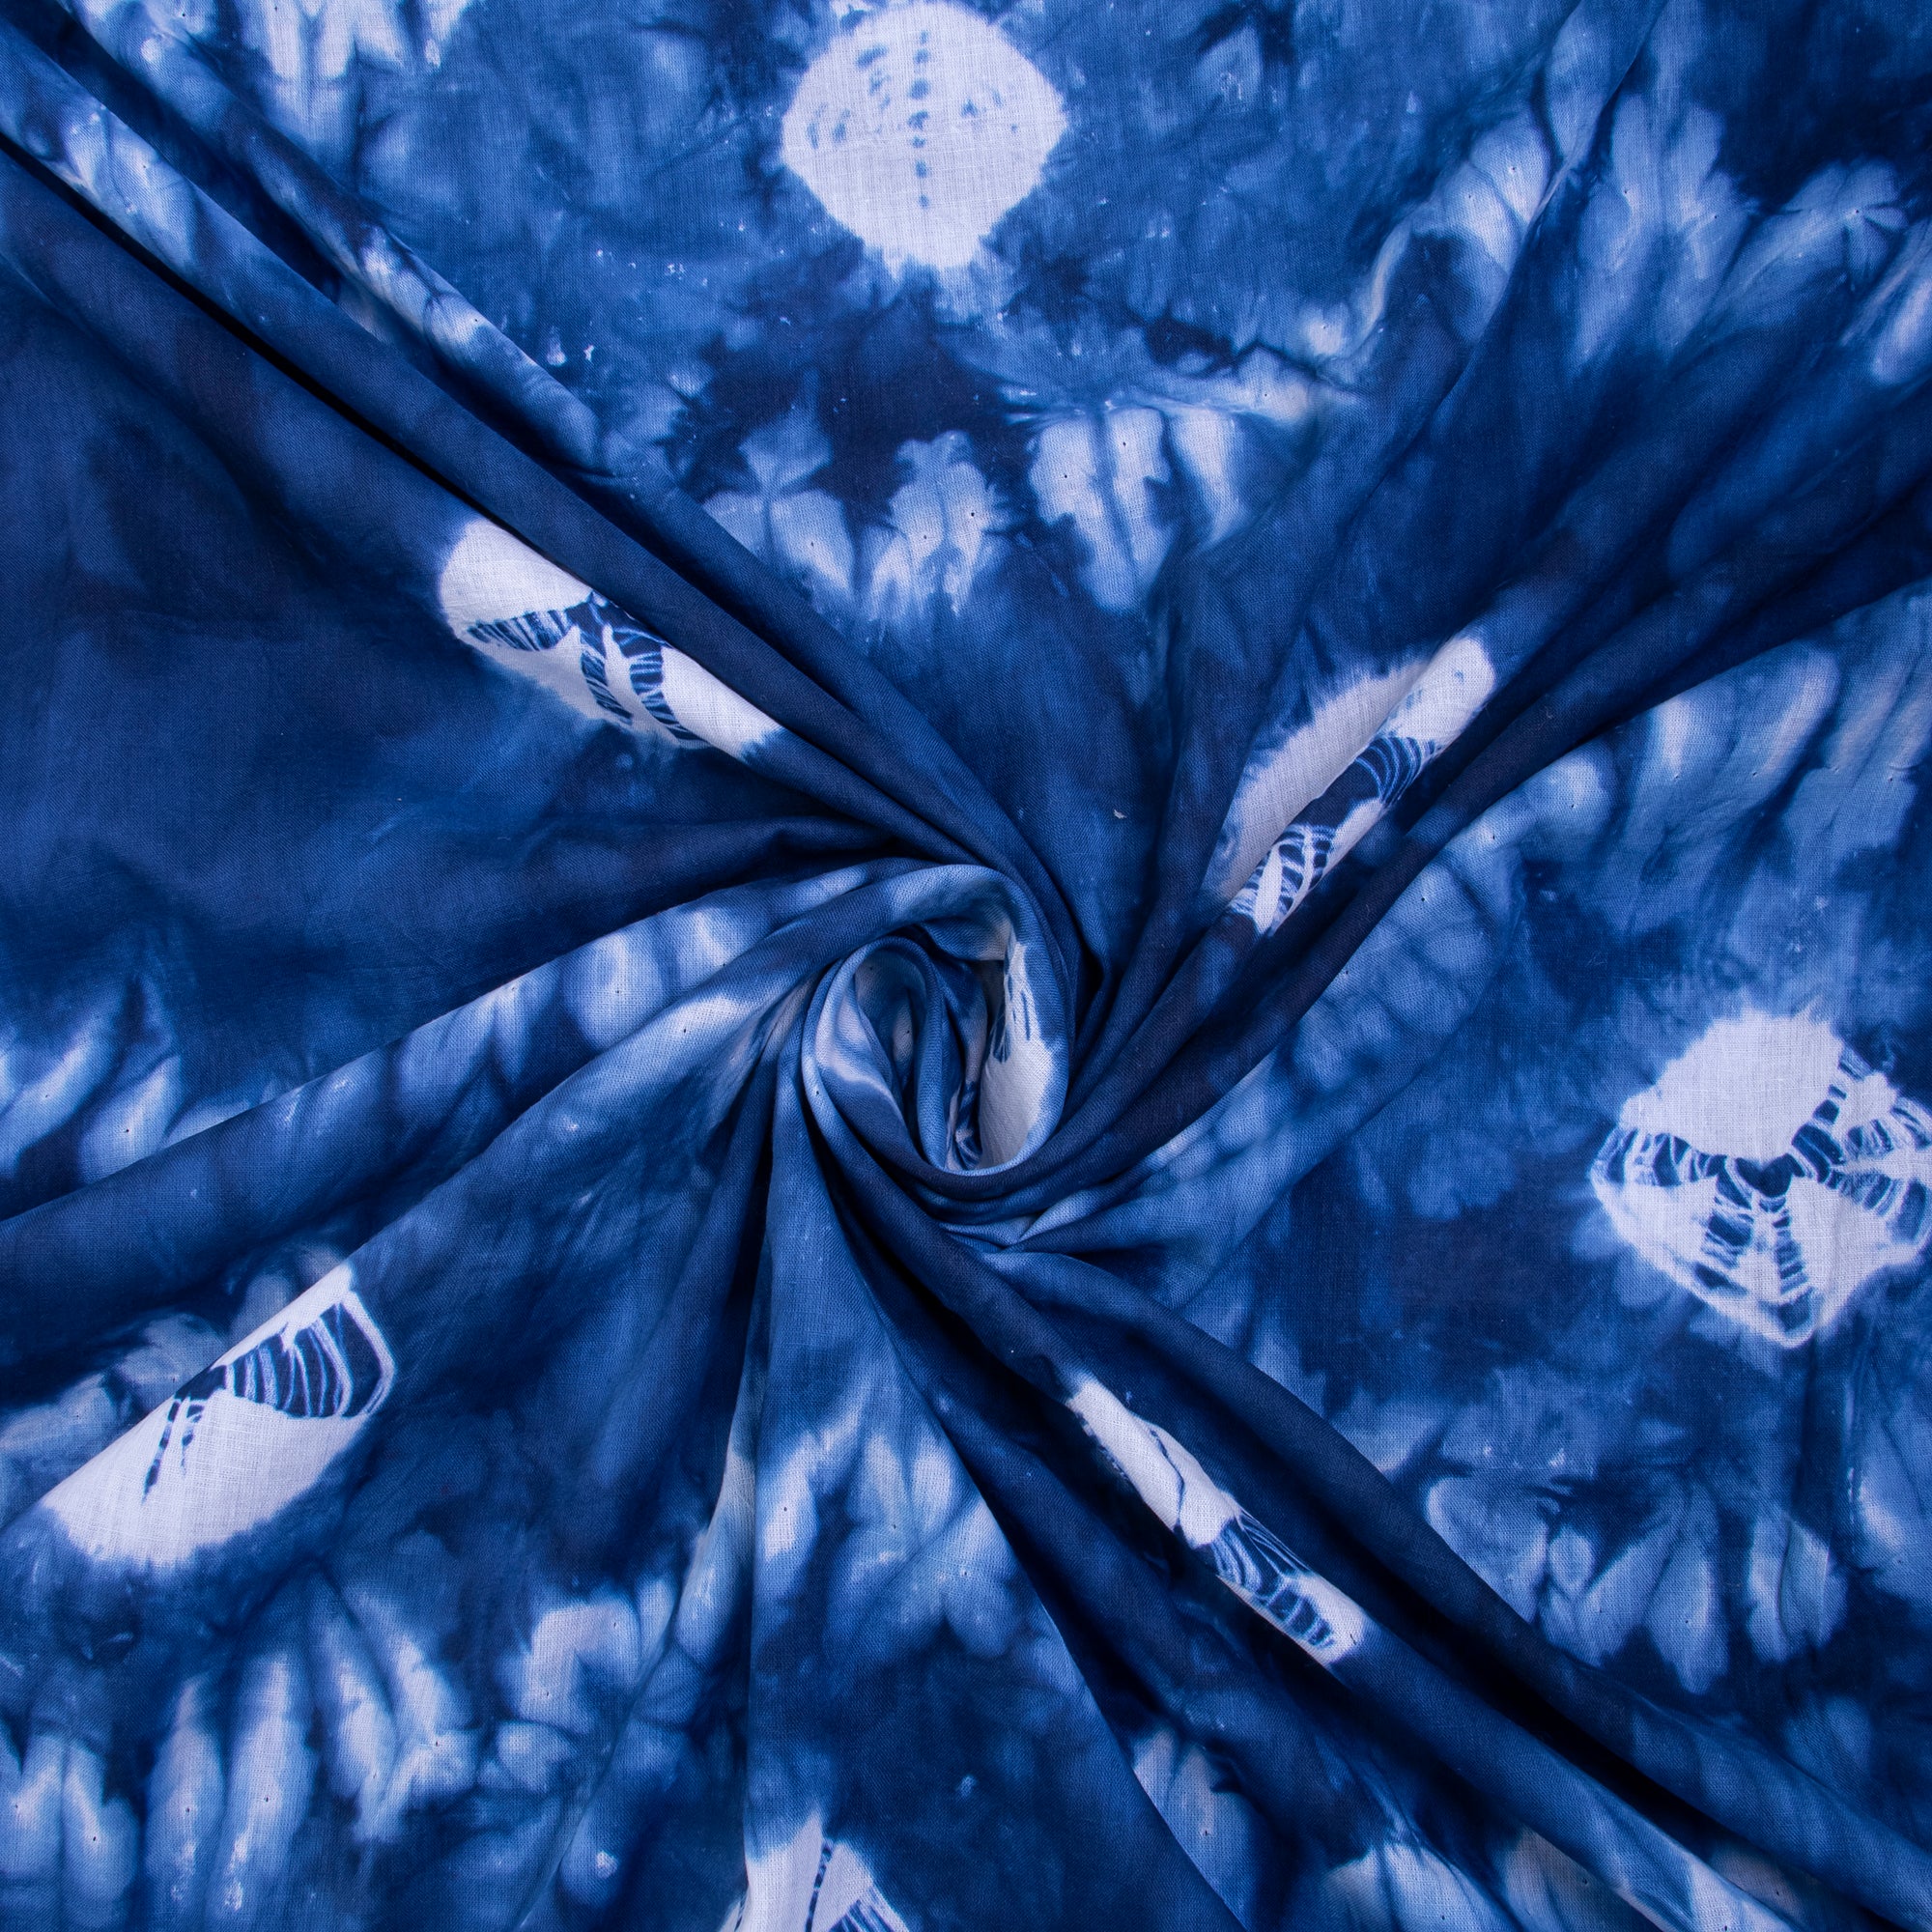 Aqua Aura Shibori Print Running Fabric Tie Dye